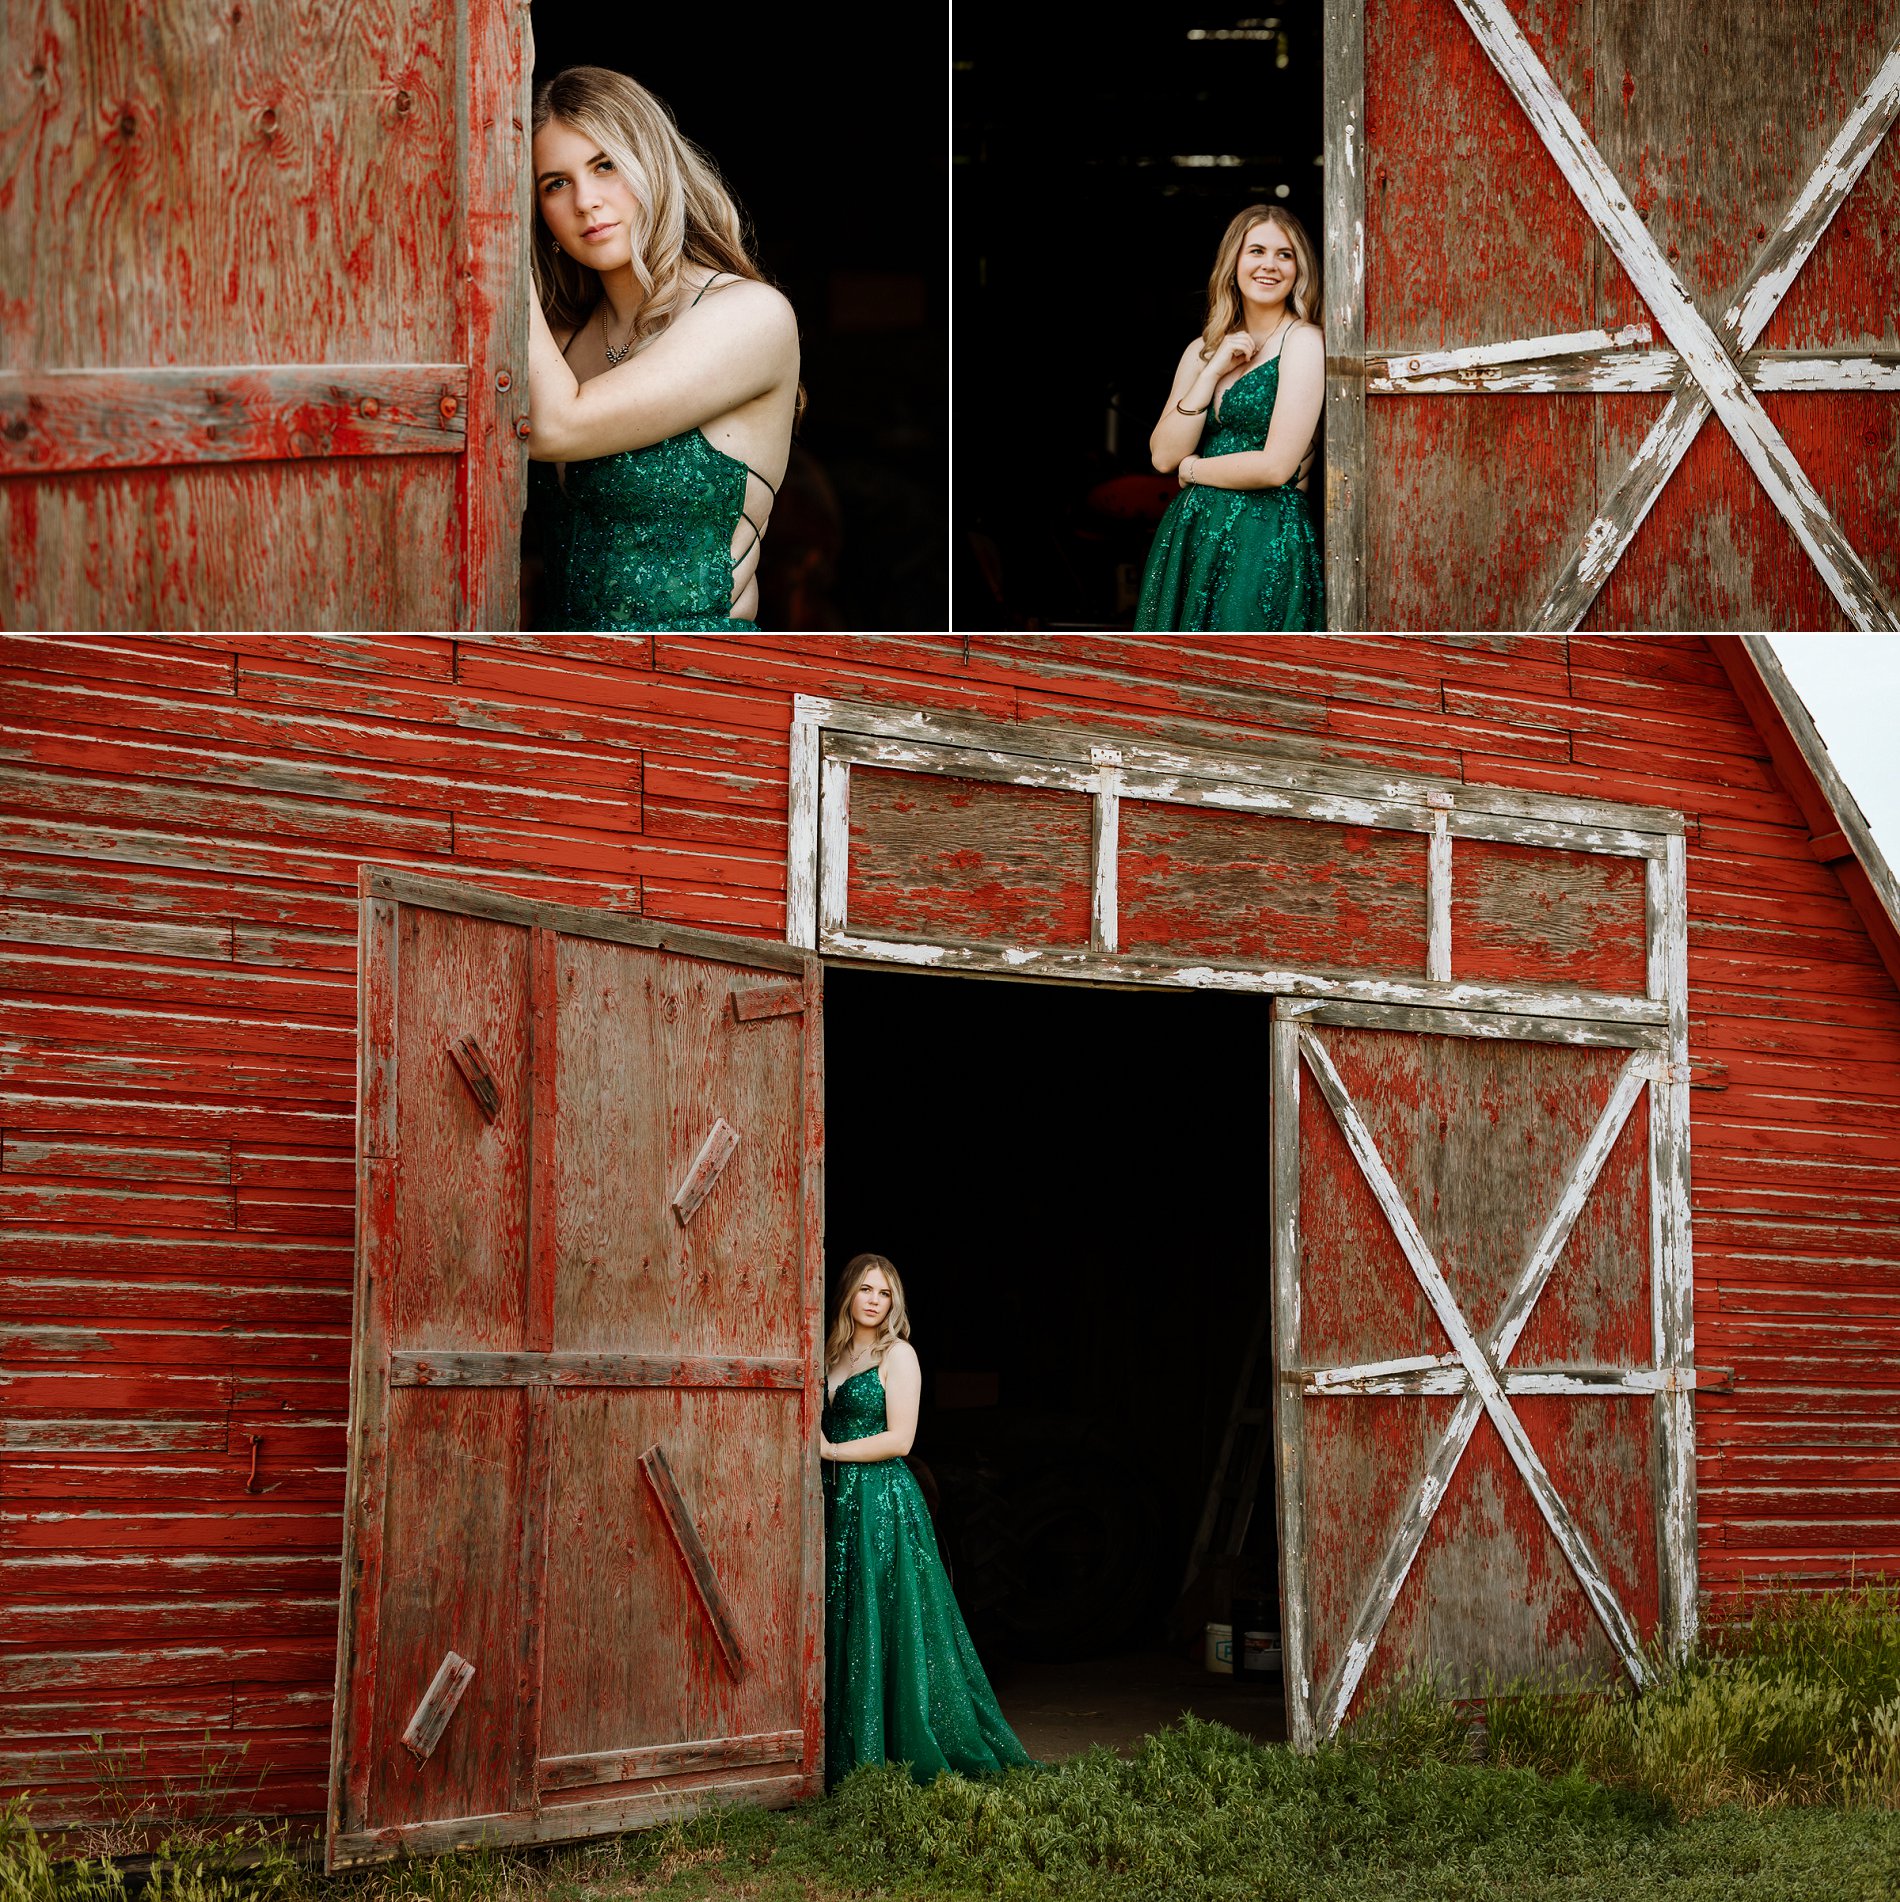 Graduation photos with an old red barn on the family farm near Outlook, Saskatchewan.